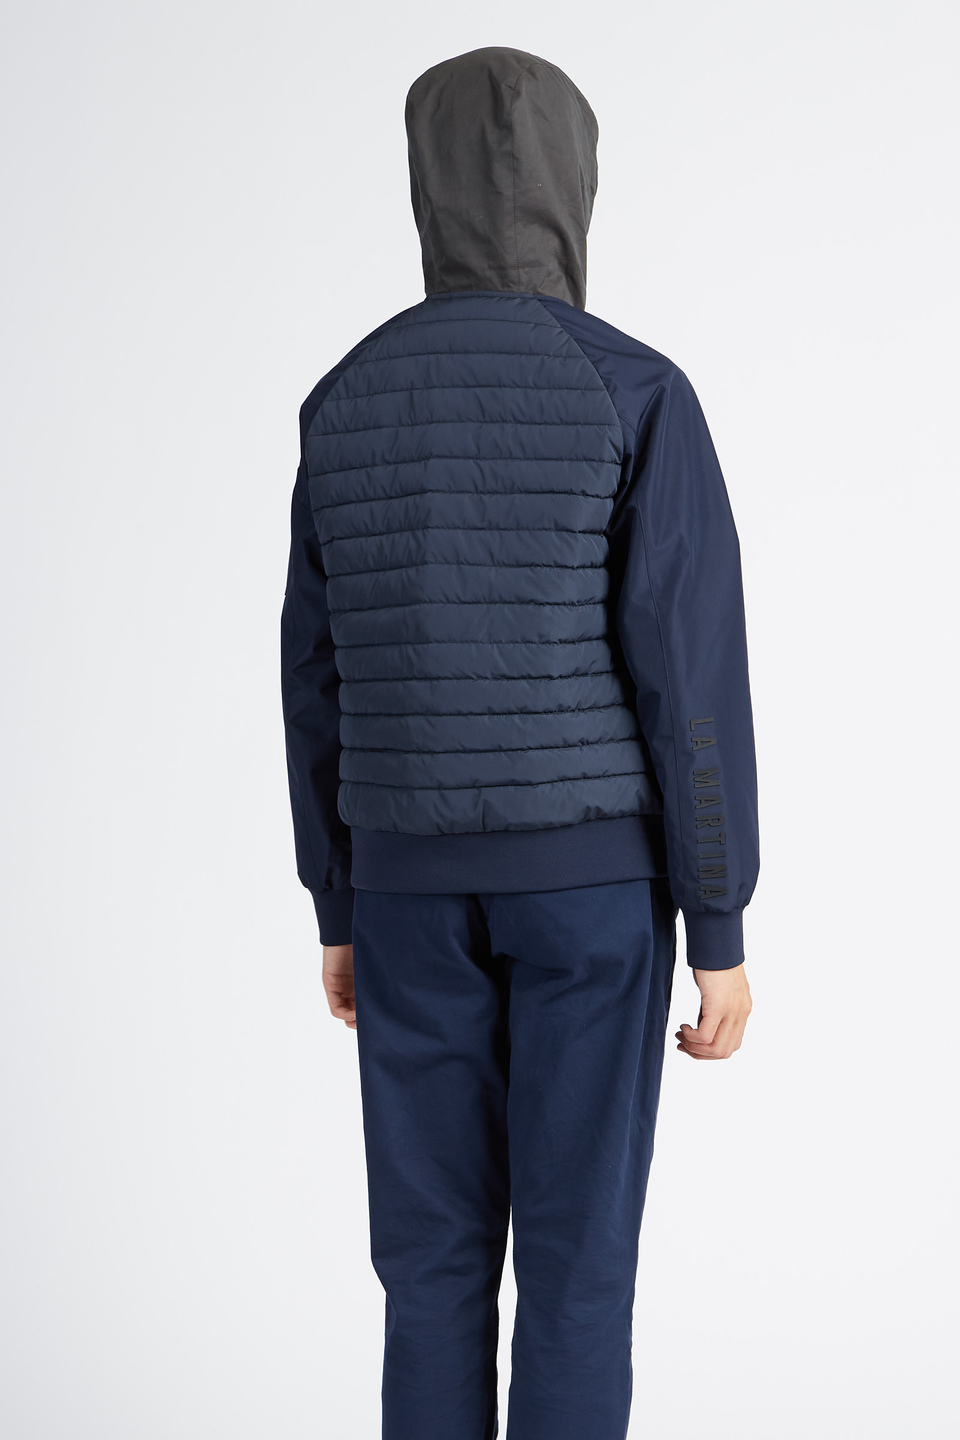 Veste homme Polo Academy couleur unie zippée à capuche avec poches boutonnées - Vannie | La Martina - Official Online Shop